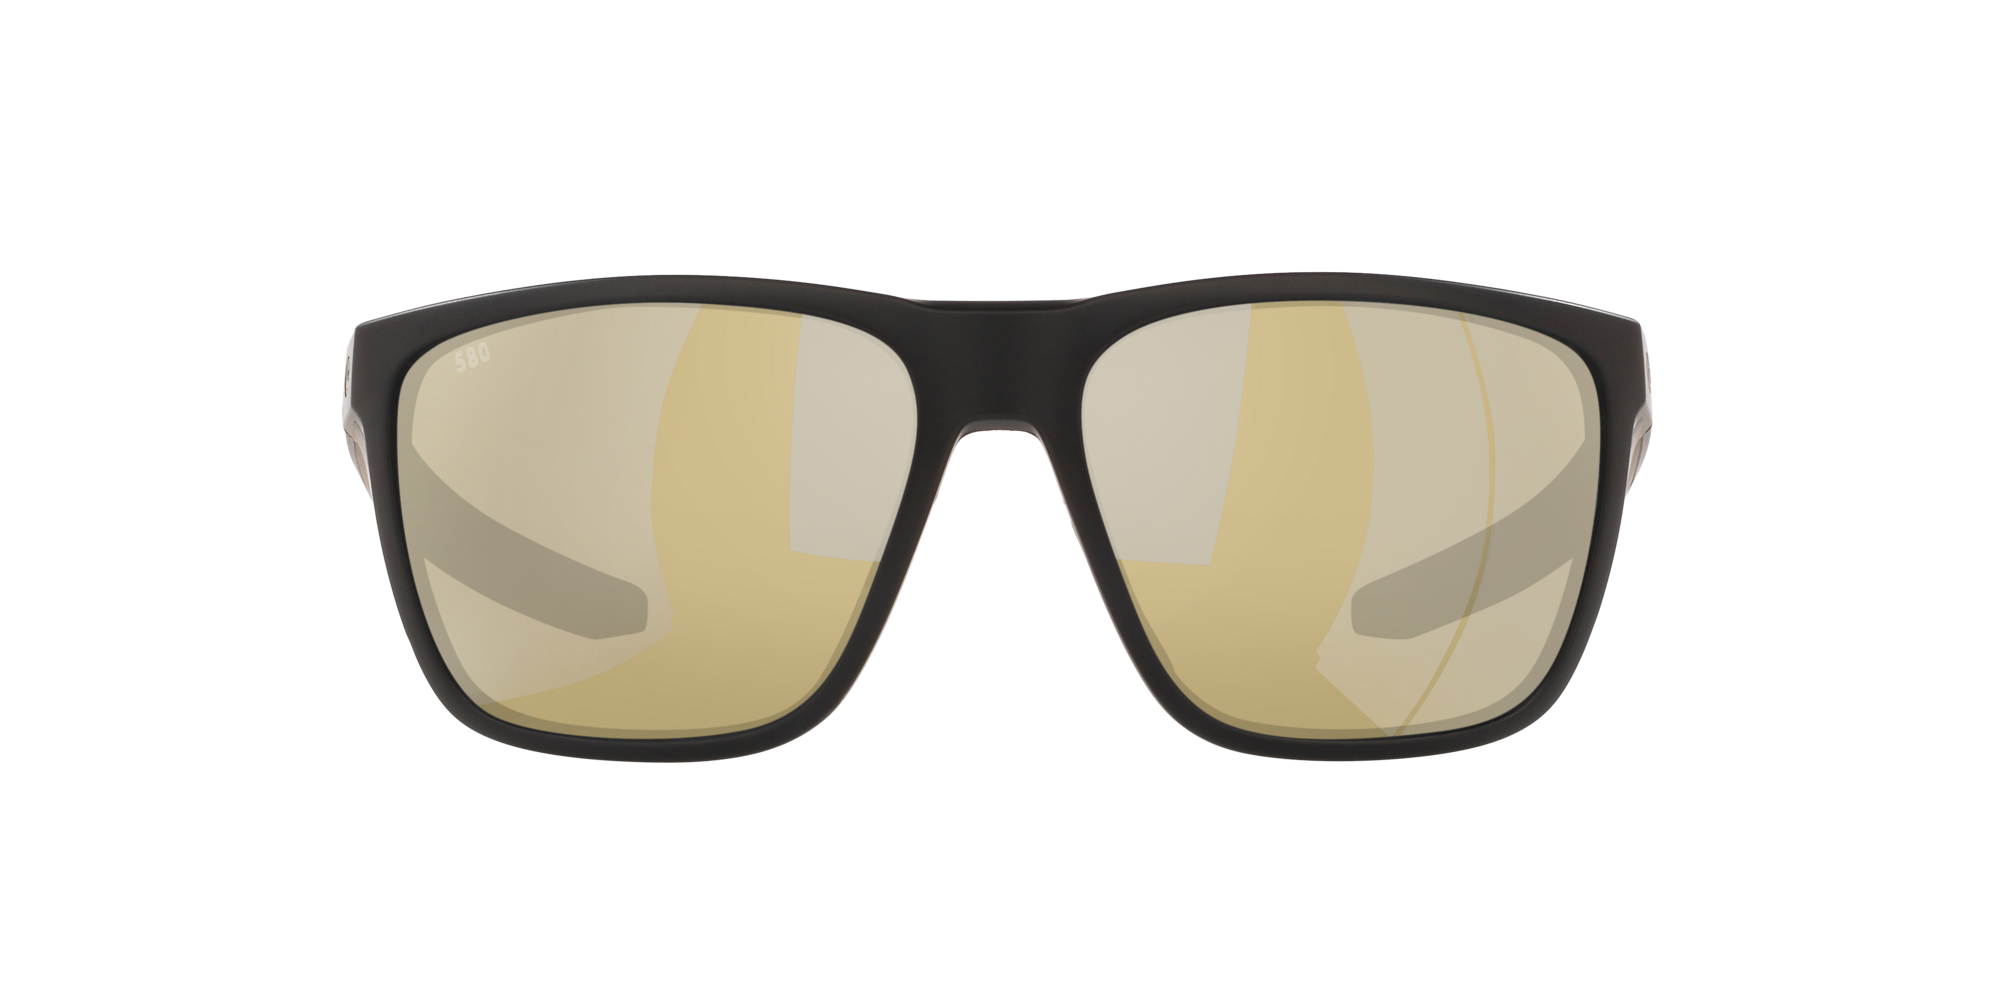 Gafas de sol integradas para y mujeres gafas demujer 